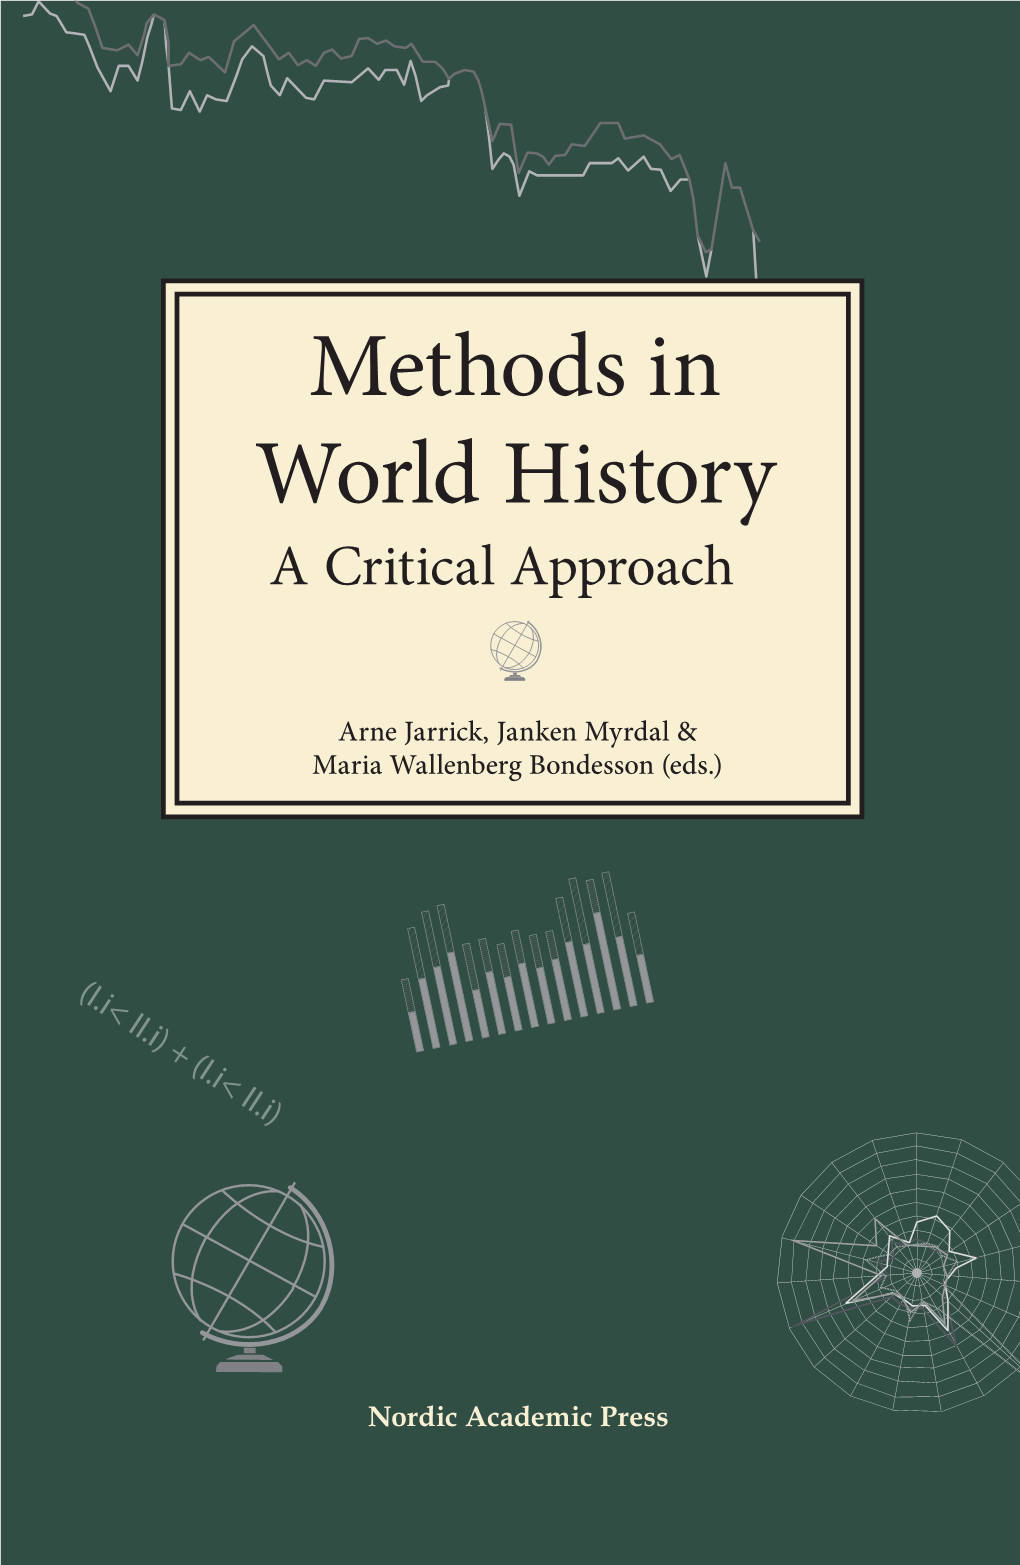 Methods in World History Methods in World History a Critical Approach